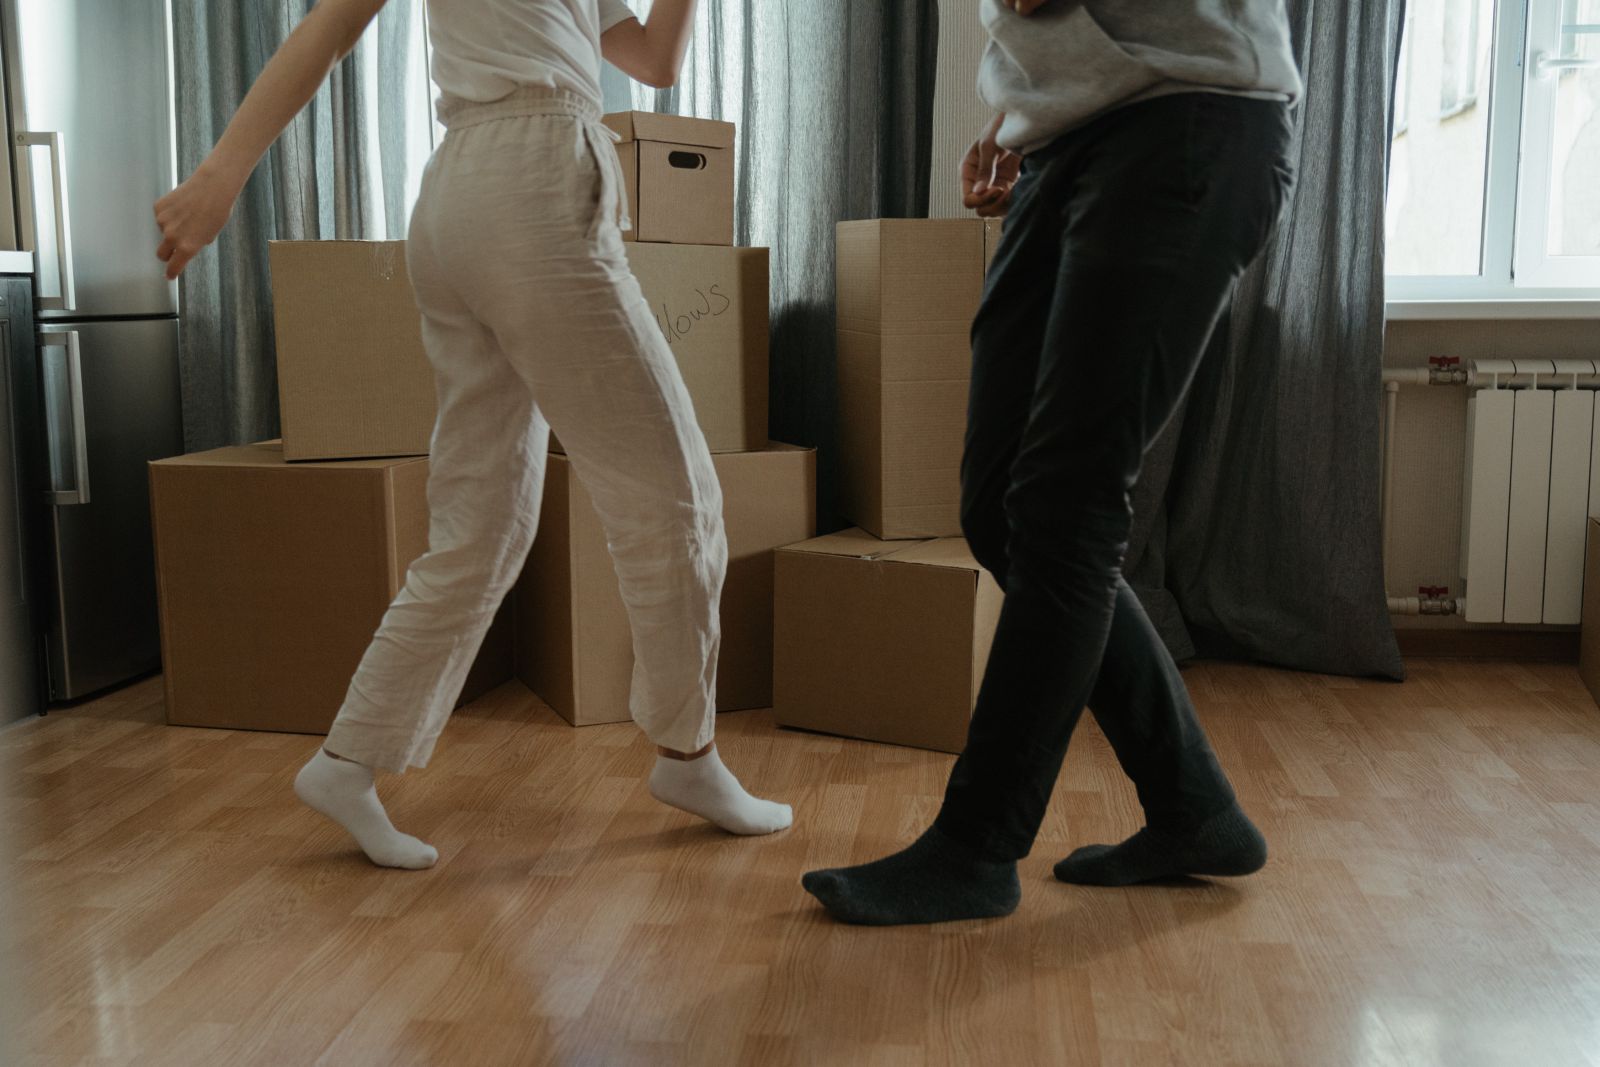 Duas pessoas dançando em casa ao lado de caixas